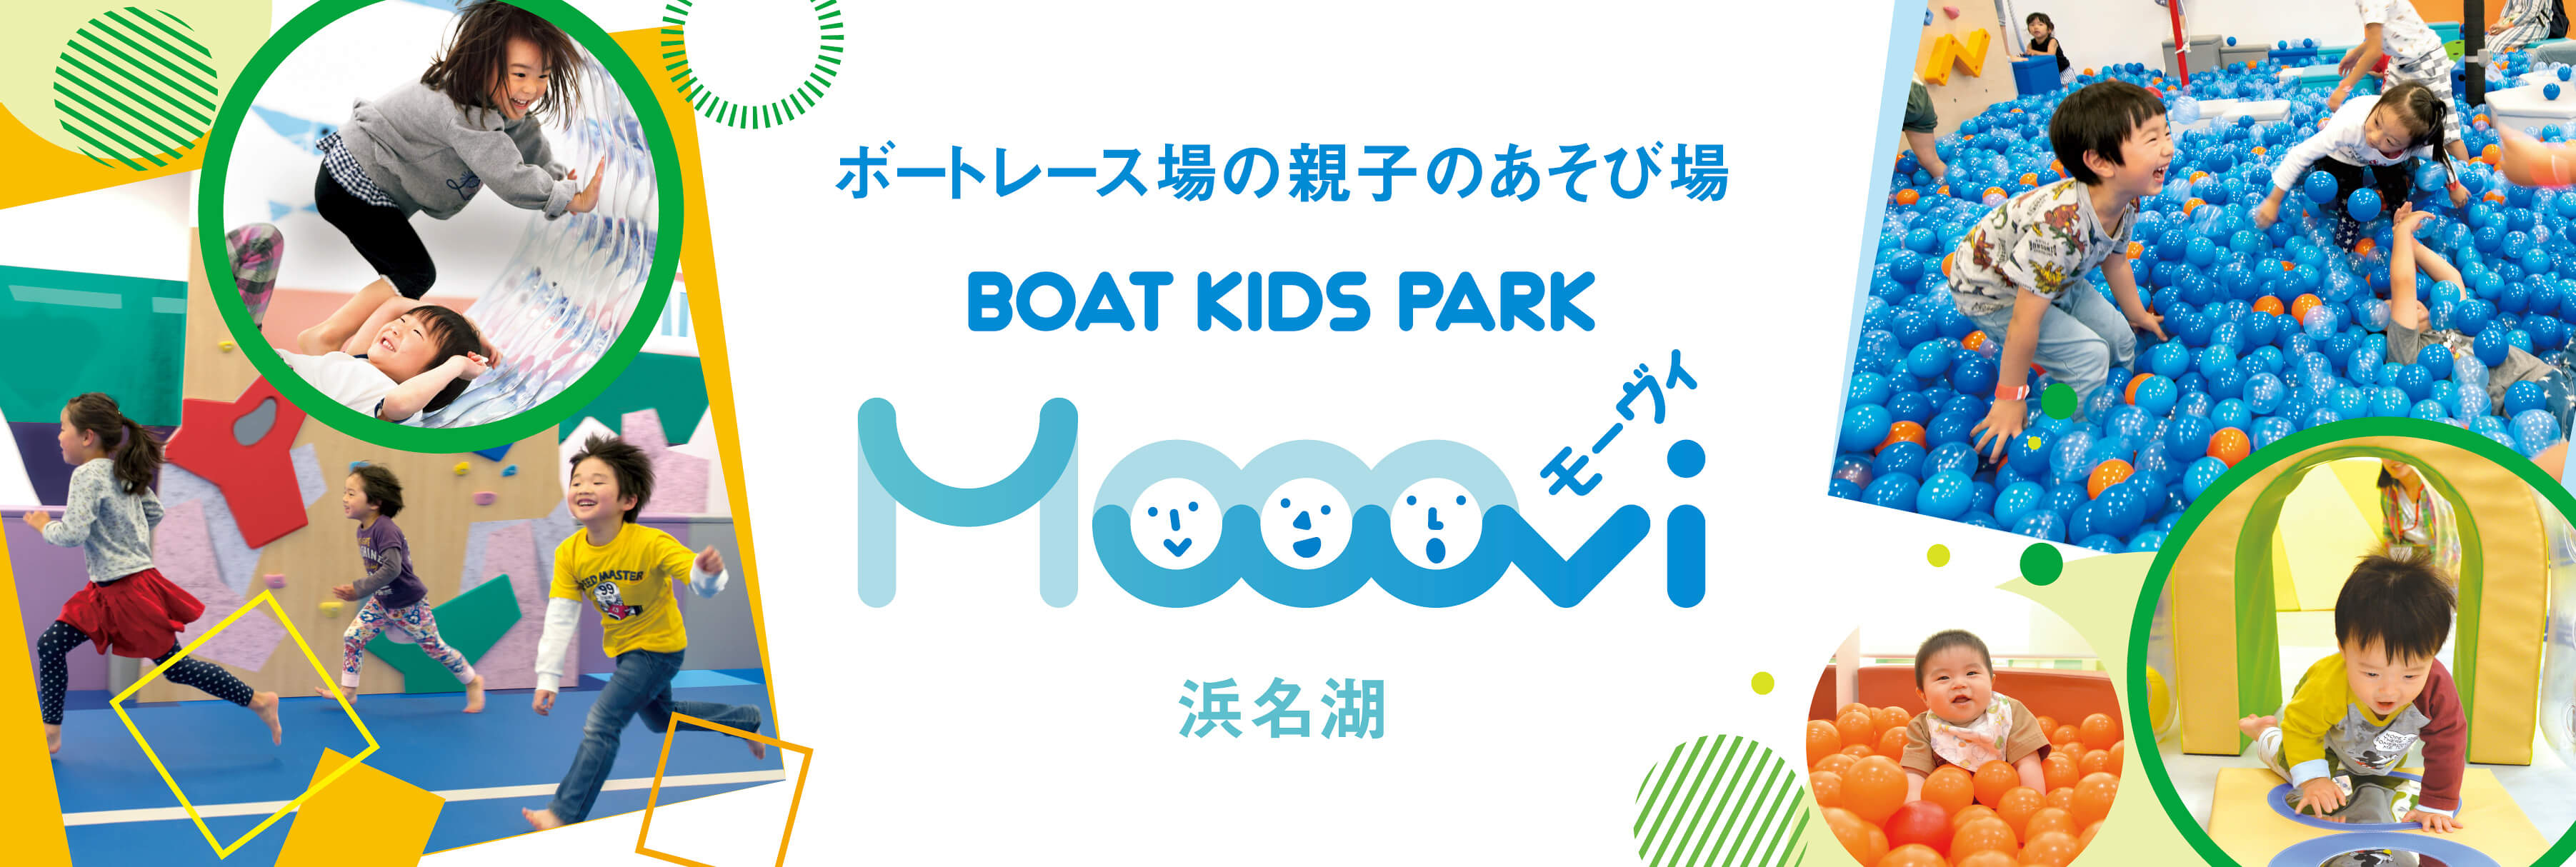 ボートレース場の親子のあそび場 Boat Kids Park Mooovi（モーヴィ）浜名湖